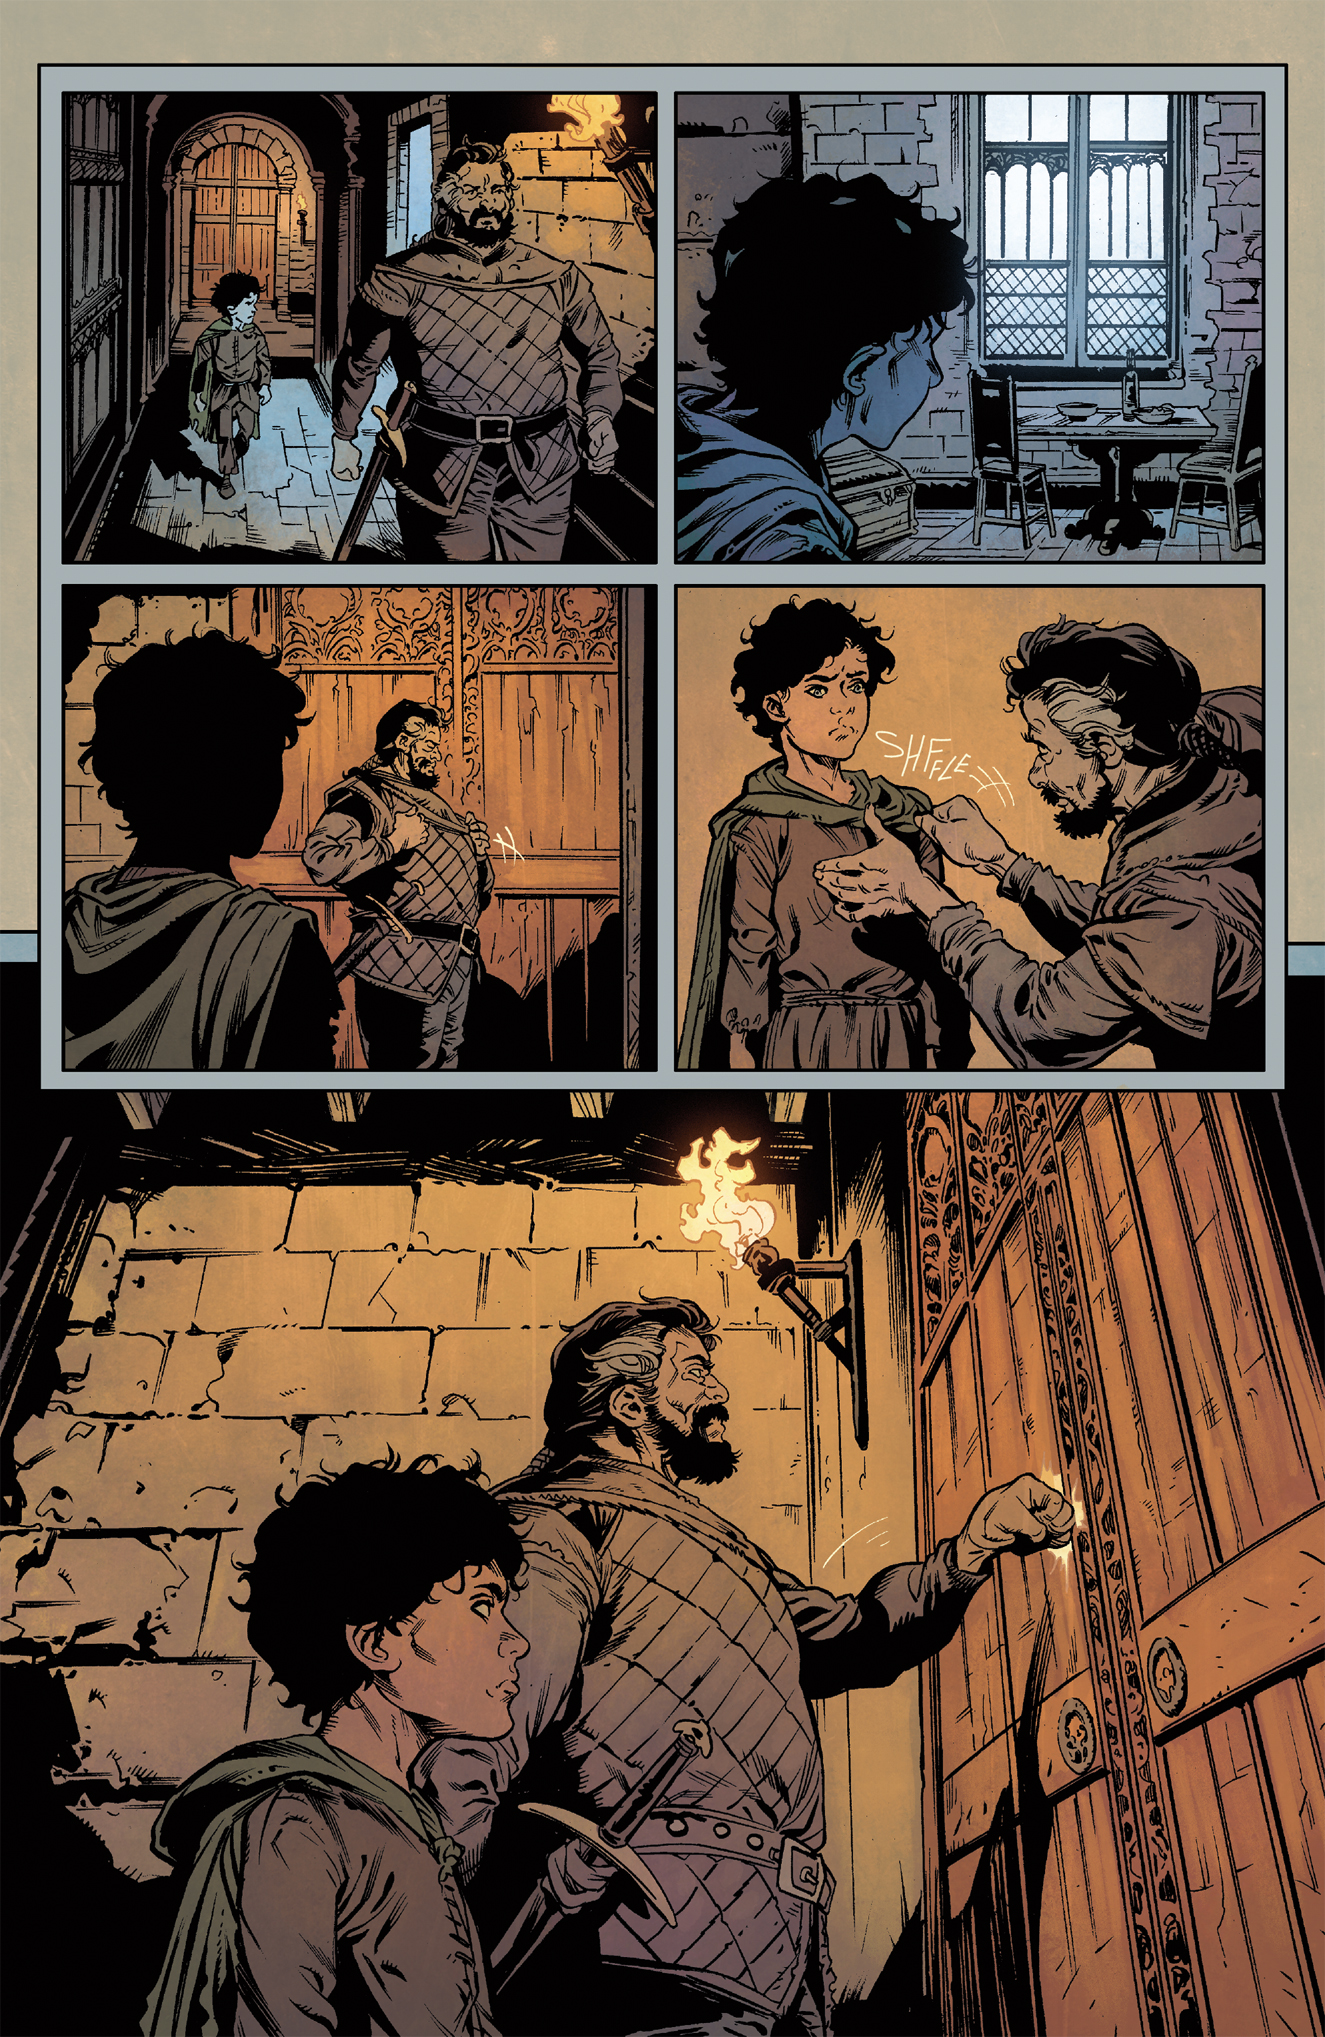 Assassin's Apprentice: Volume 1 (Graphic Novel) by Robin Hobb